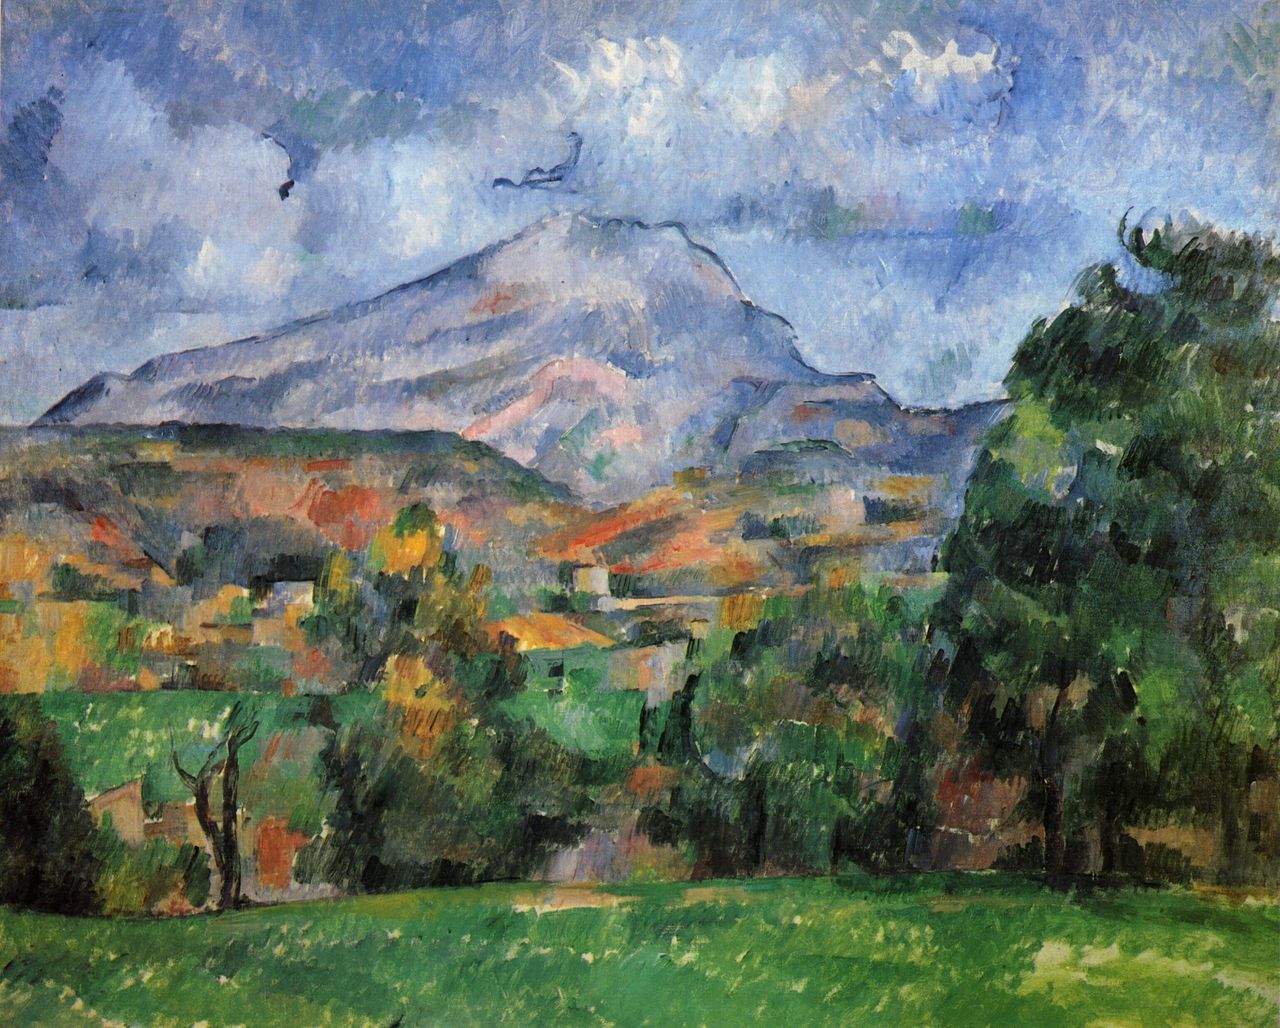 Montagne Sainte Victoire van Paul Cézanne (1839–1906), een van de te veilen werken uit de collectie van Paul Allen.